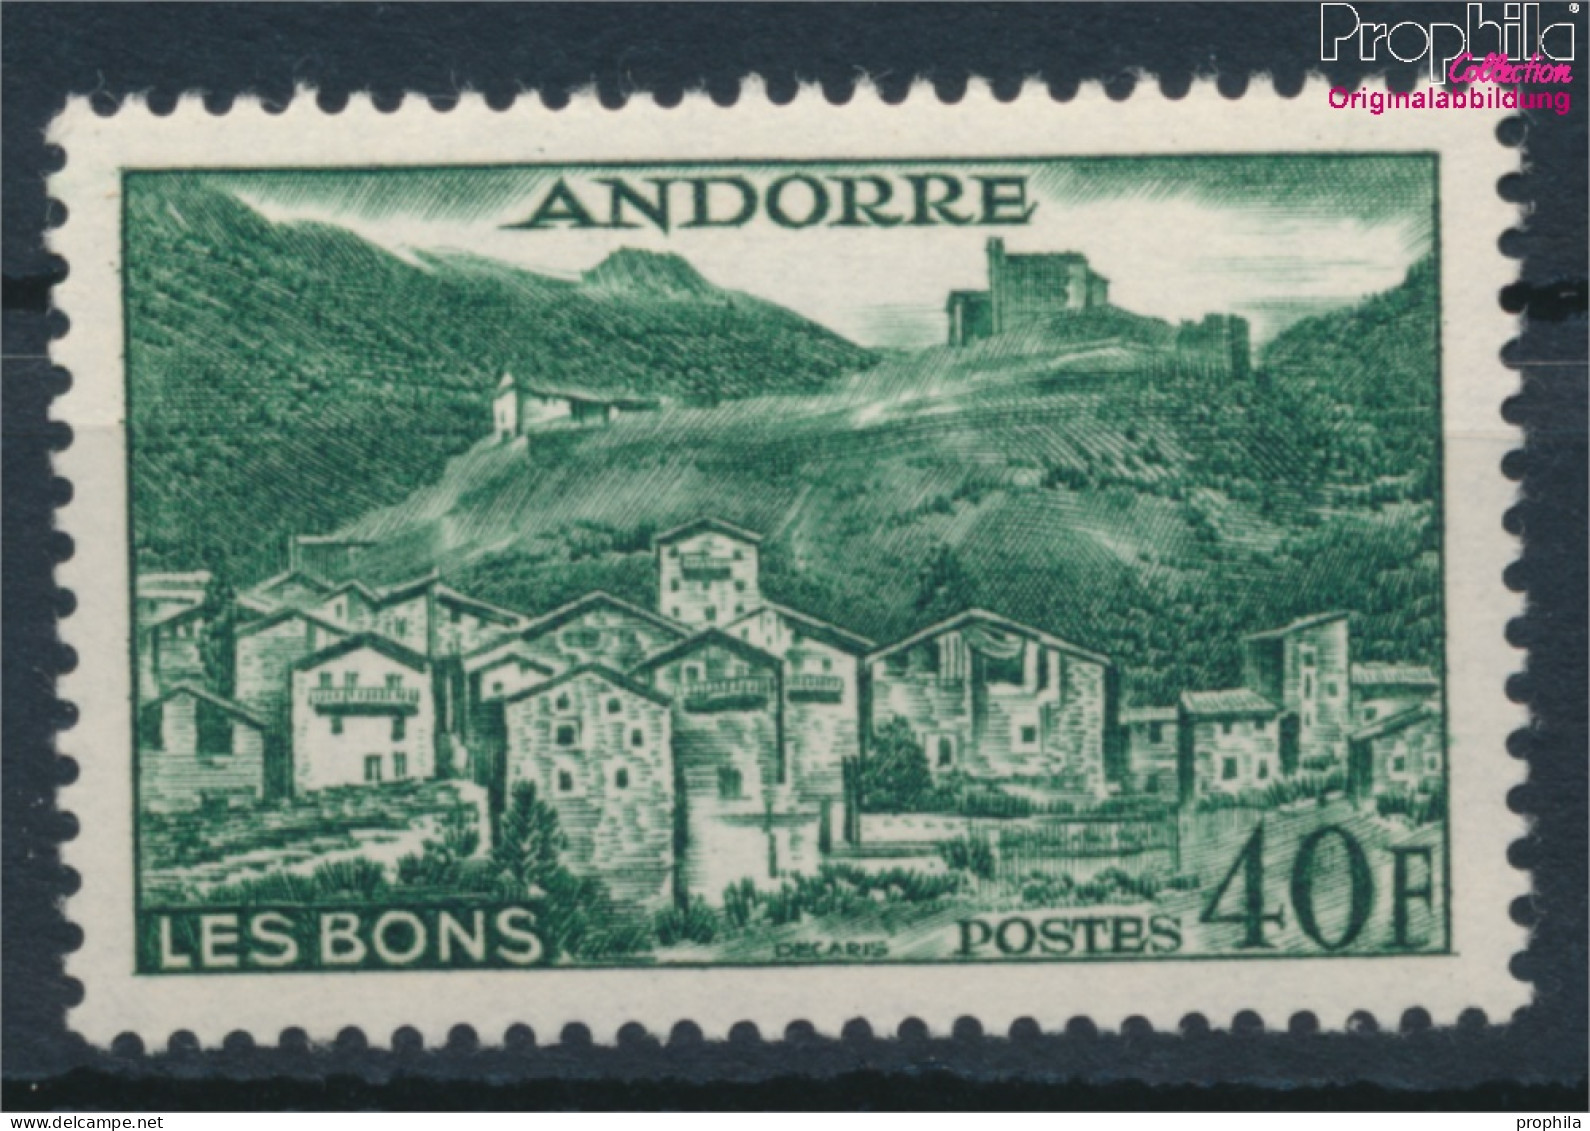 Andorra - Französische Post 155 Postfrisch 1955 Landschaften (10368396 - Ongebruikt